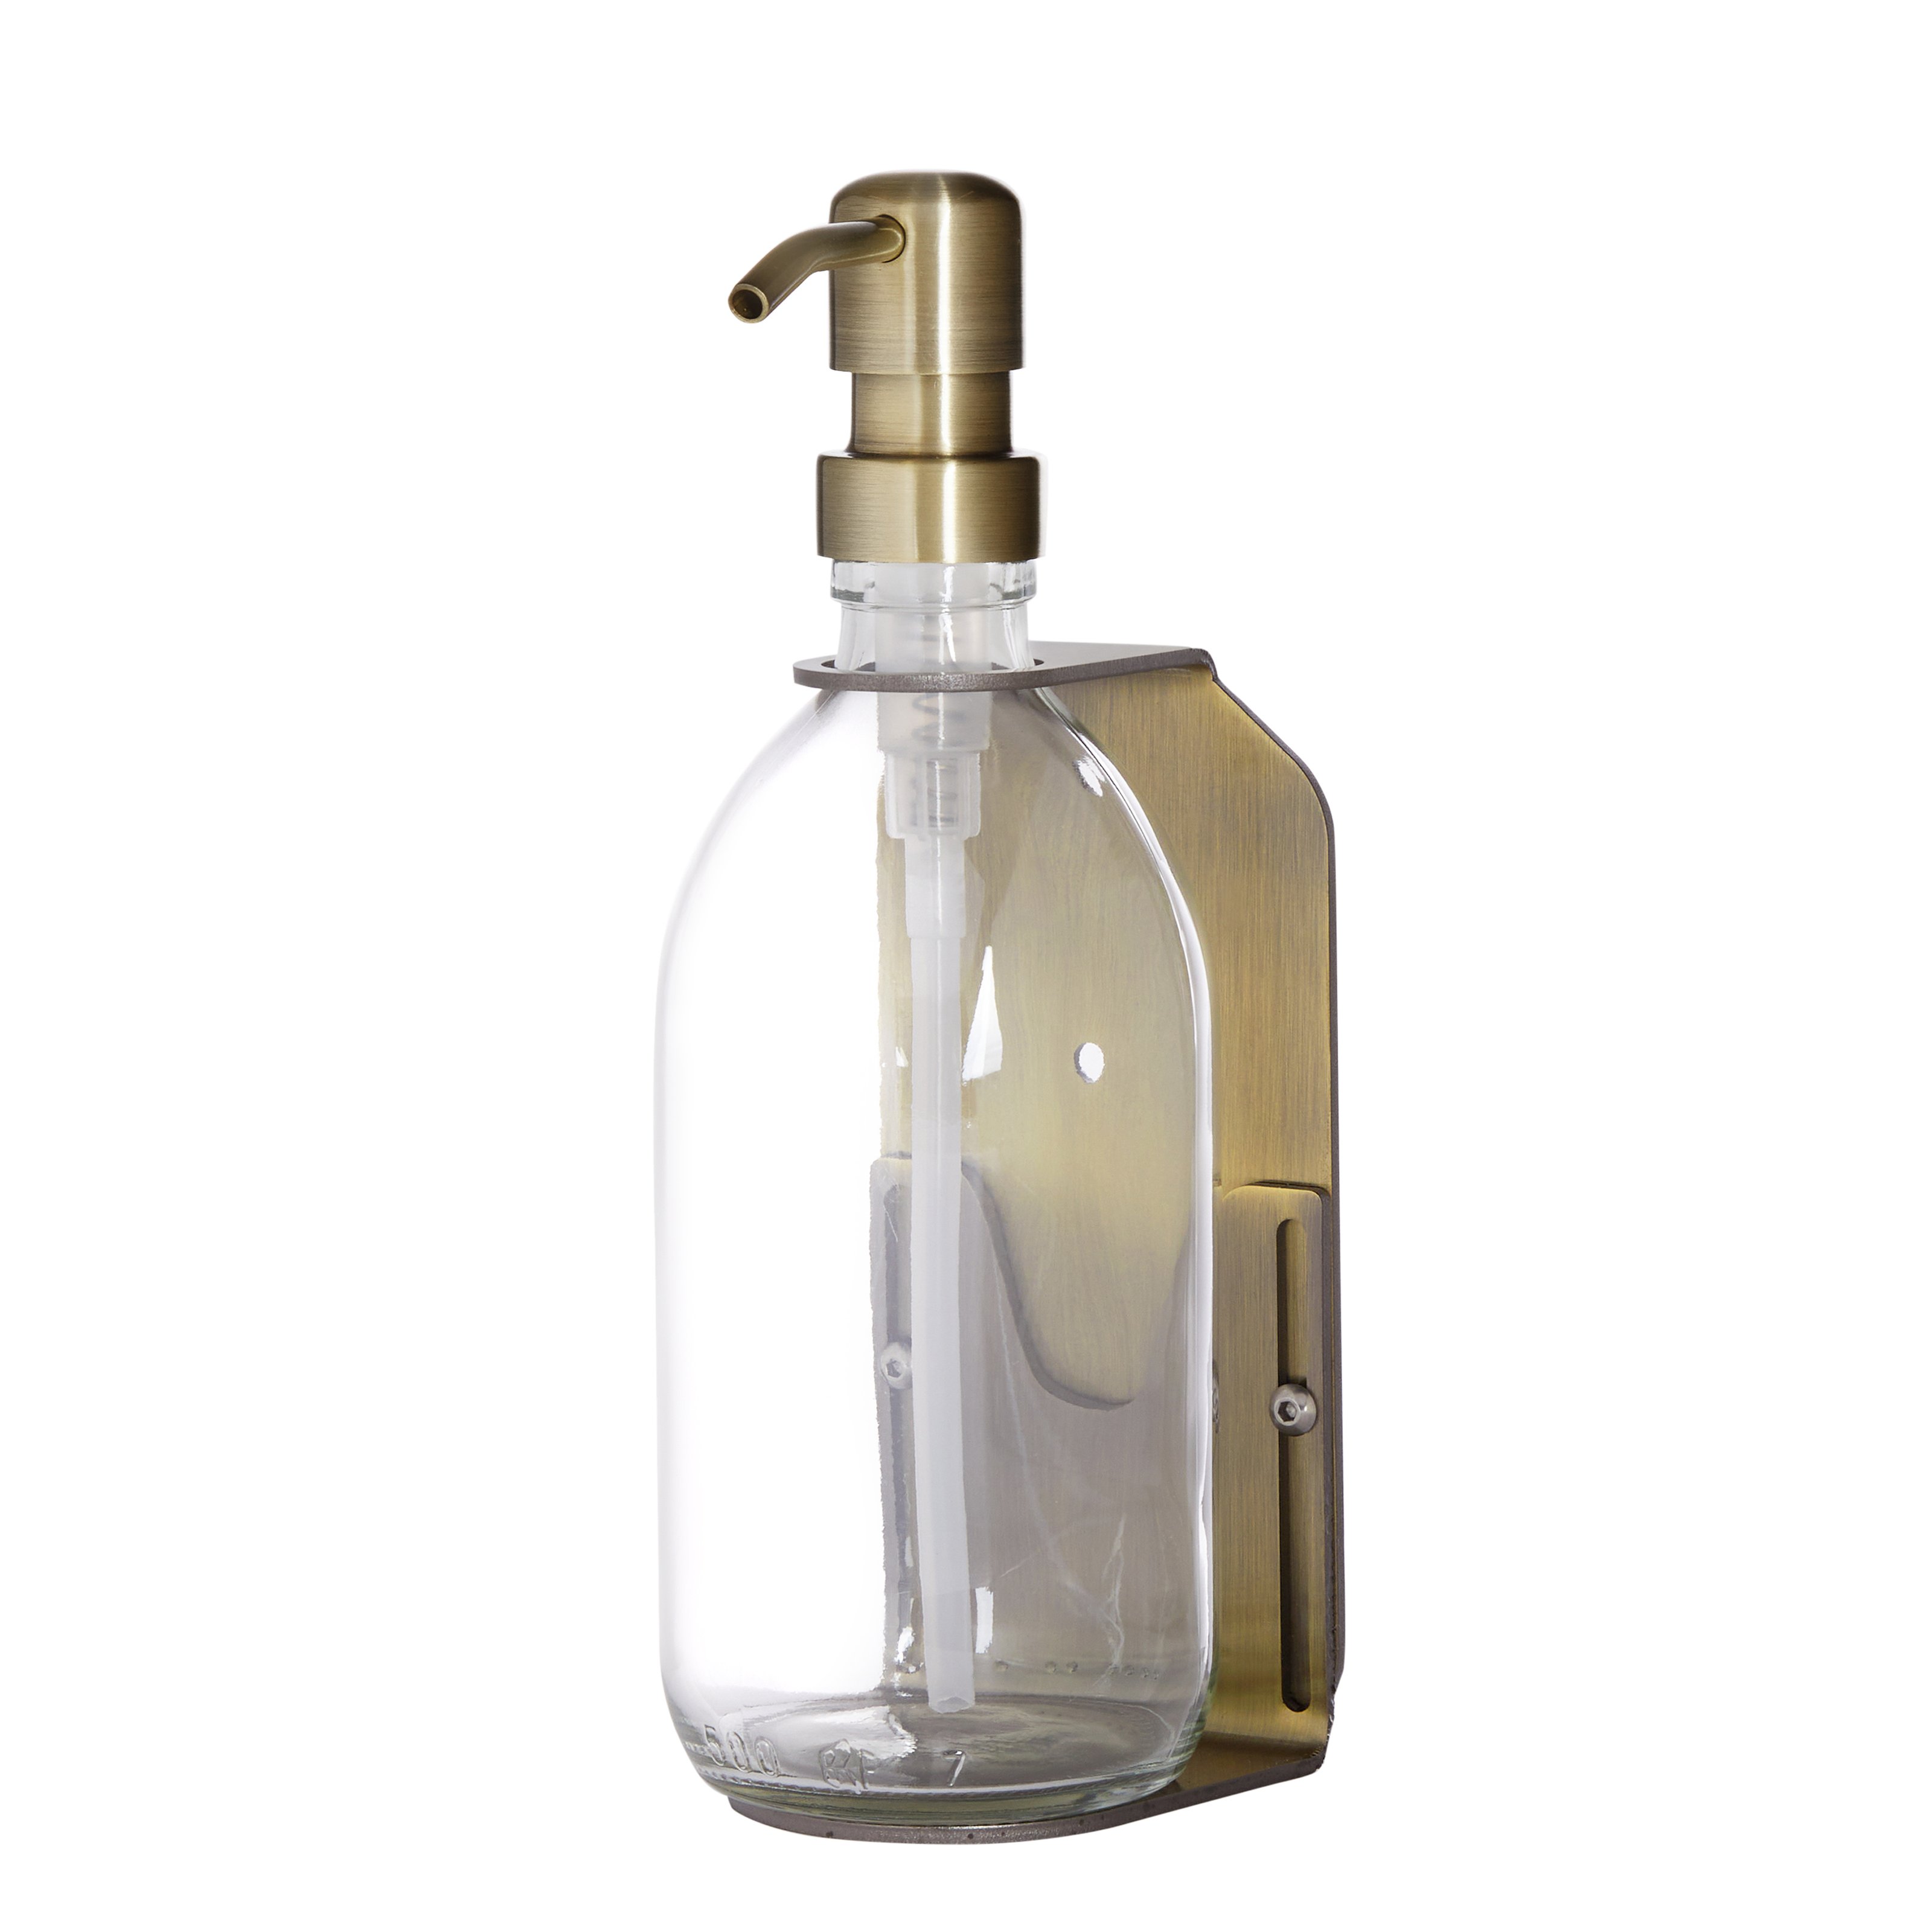 Goldfarbener Einzelflaschen-Wandhalter mit durchsichtigem Flaschenspender und goldfarbener Metallpumpe